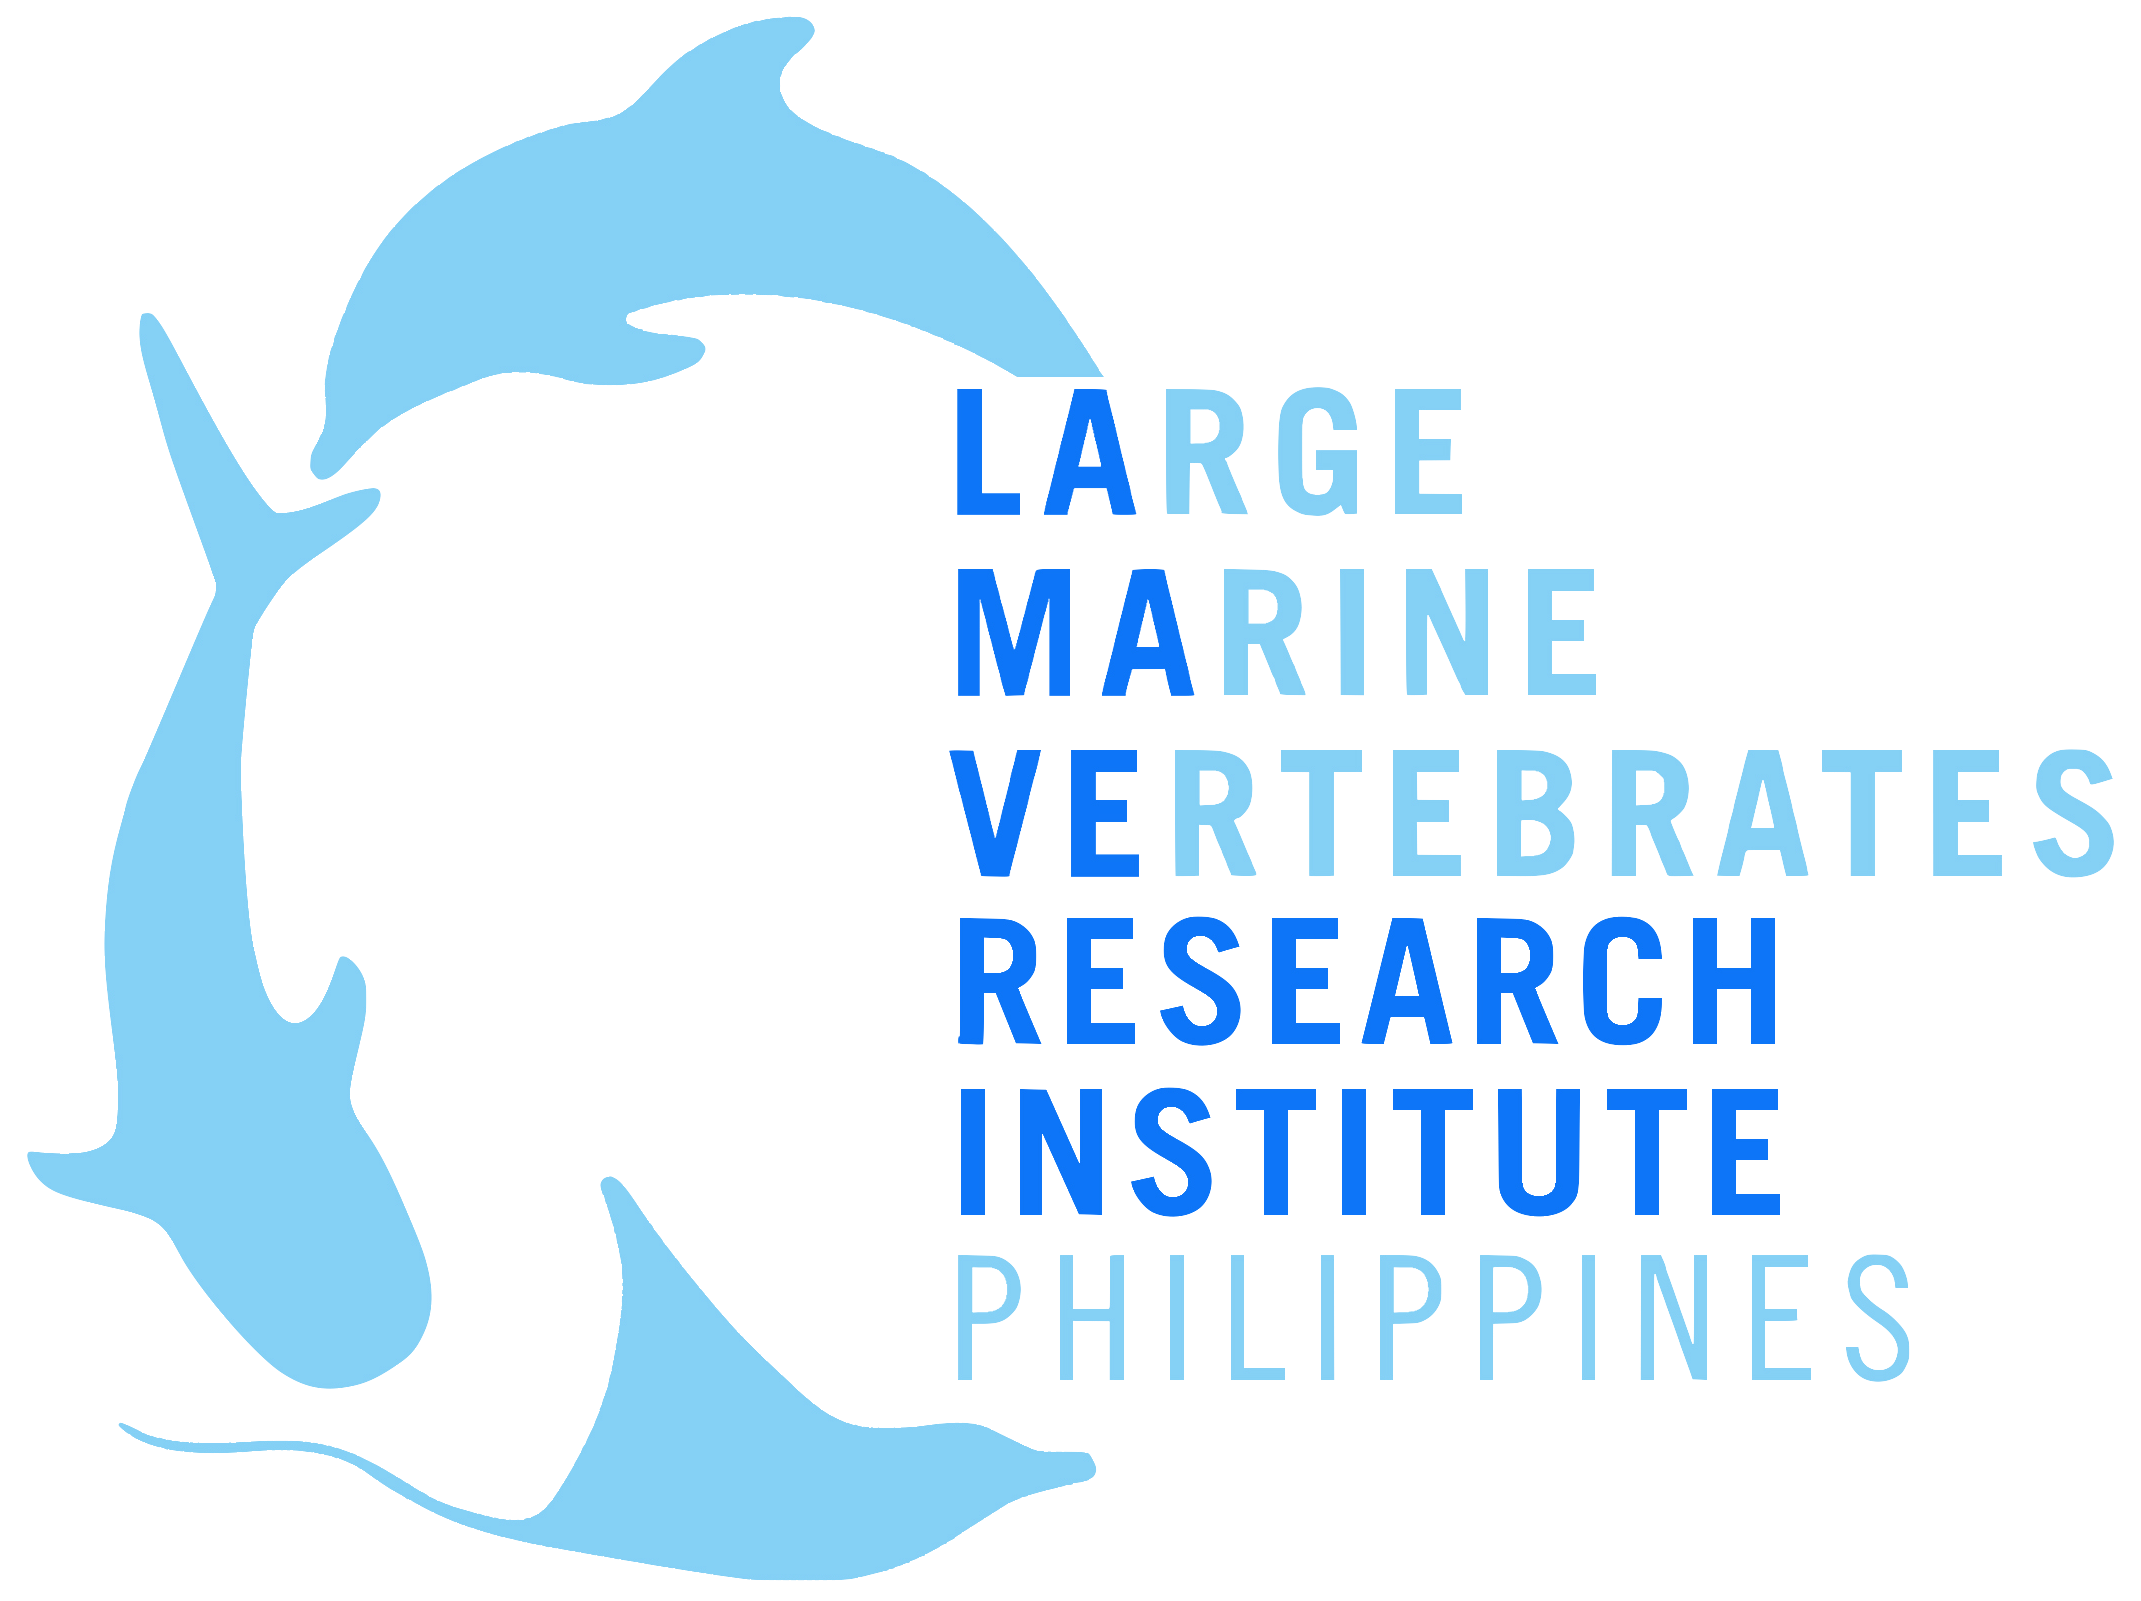 Large Marine Vertebrates Research Institute Philippines 